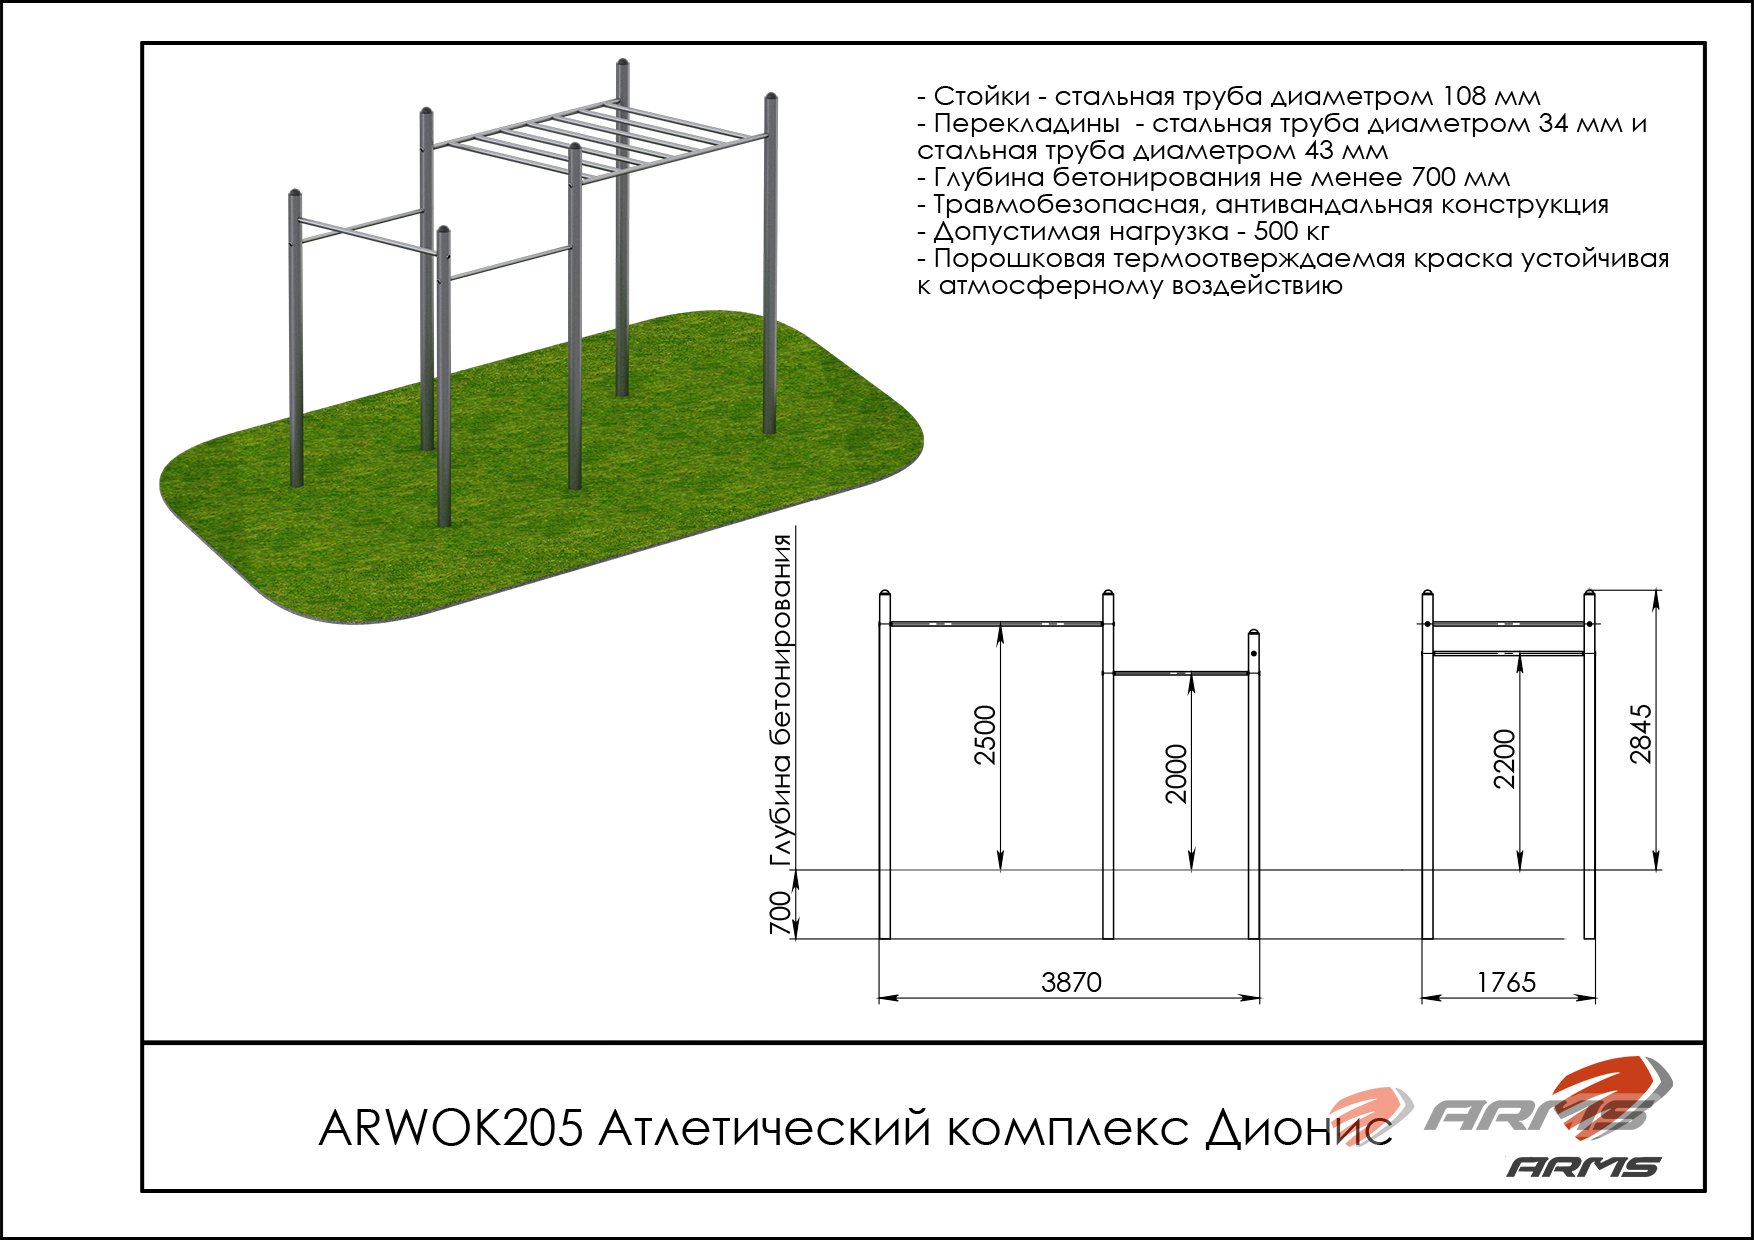 Атлетический комплекс Дионис ARWOK205